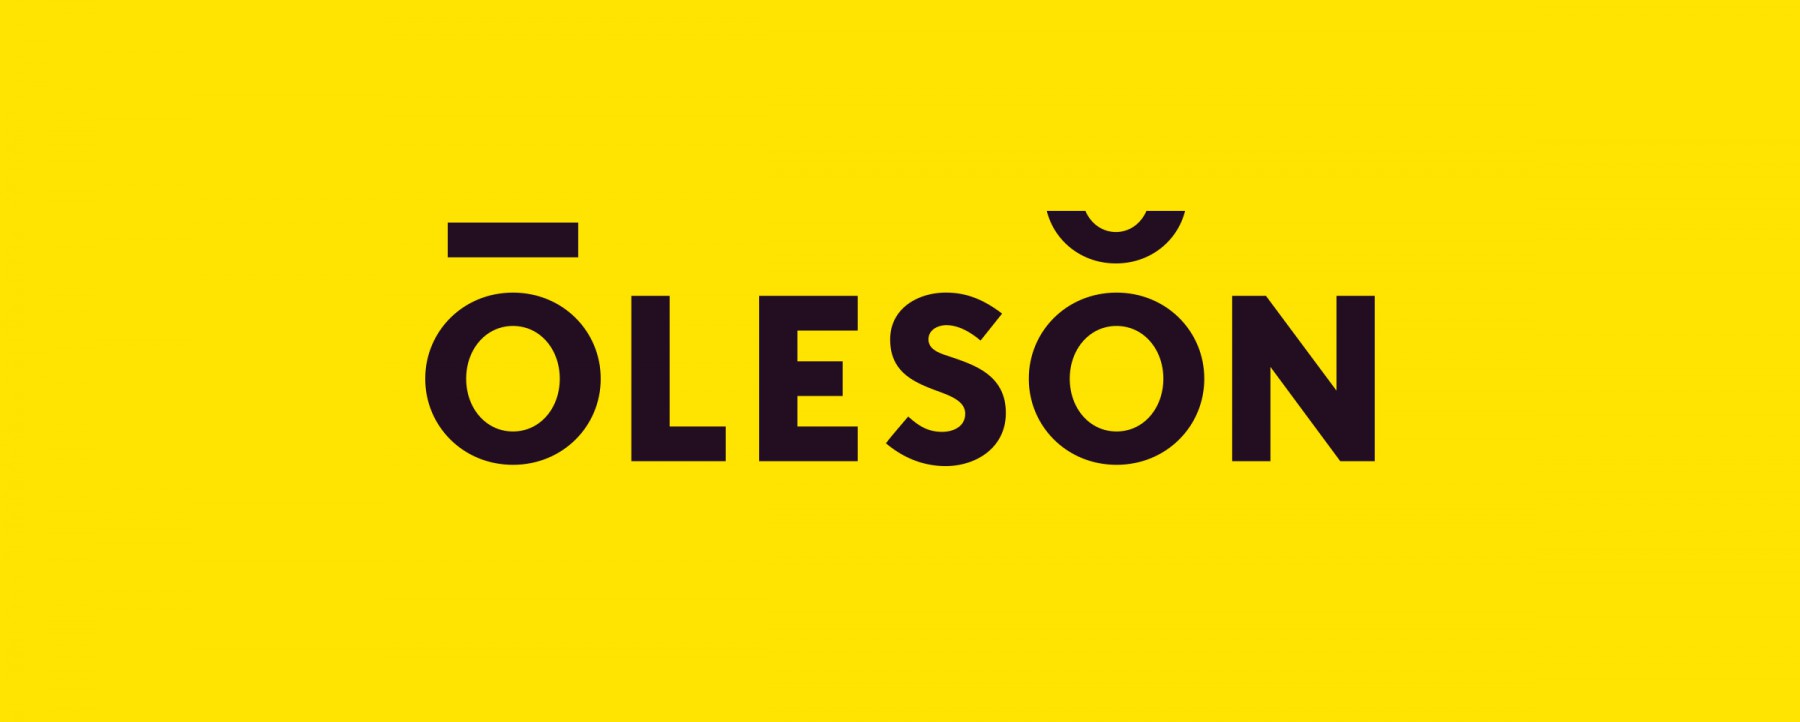 Oleson Sales logo wordmark designed by Werner Design Werks in Saint Paul, Minnesota